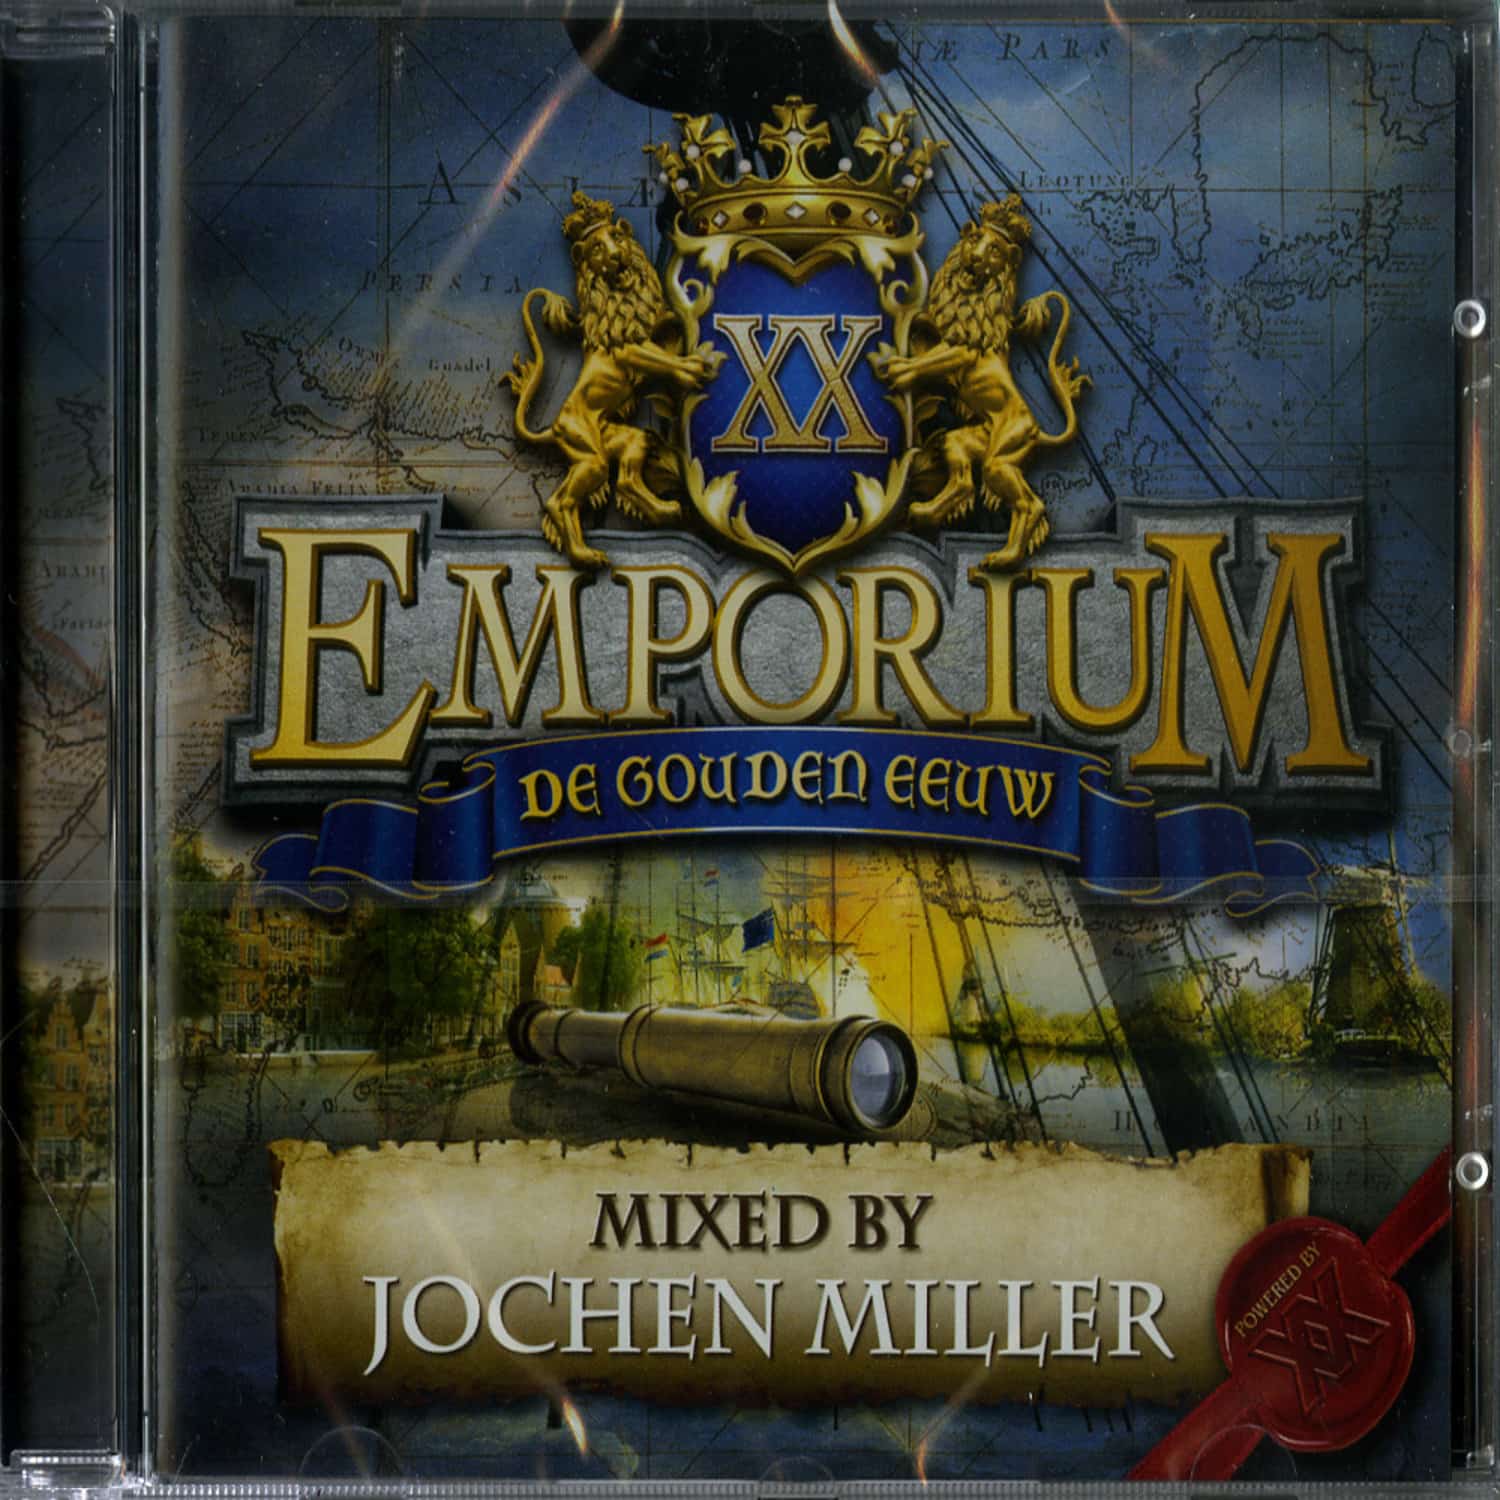 Jochen Miller - EMPORIUM 2012 - DE GOUDEN EEUW 